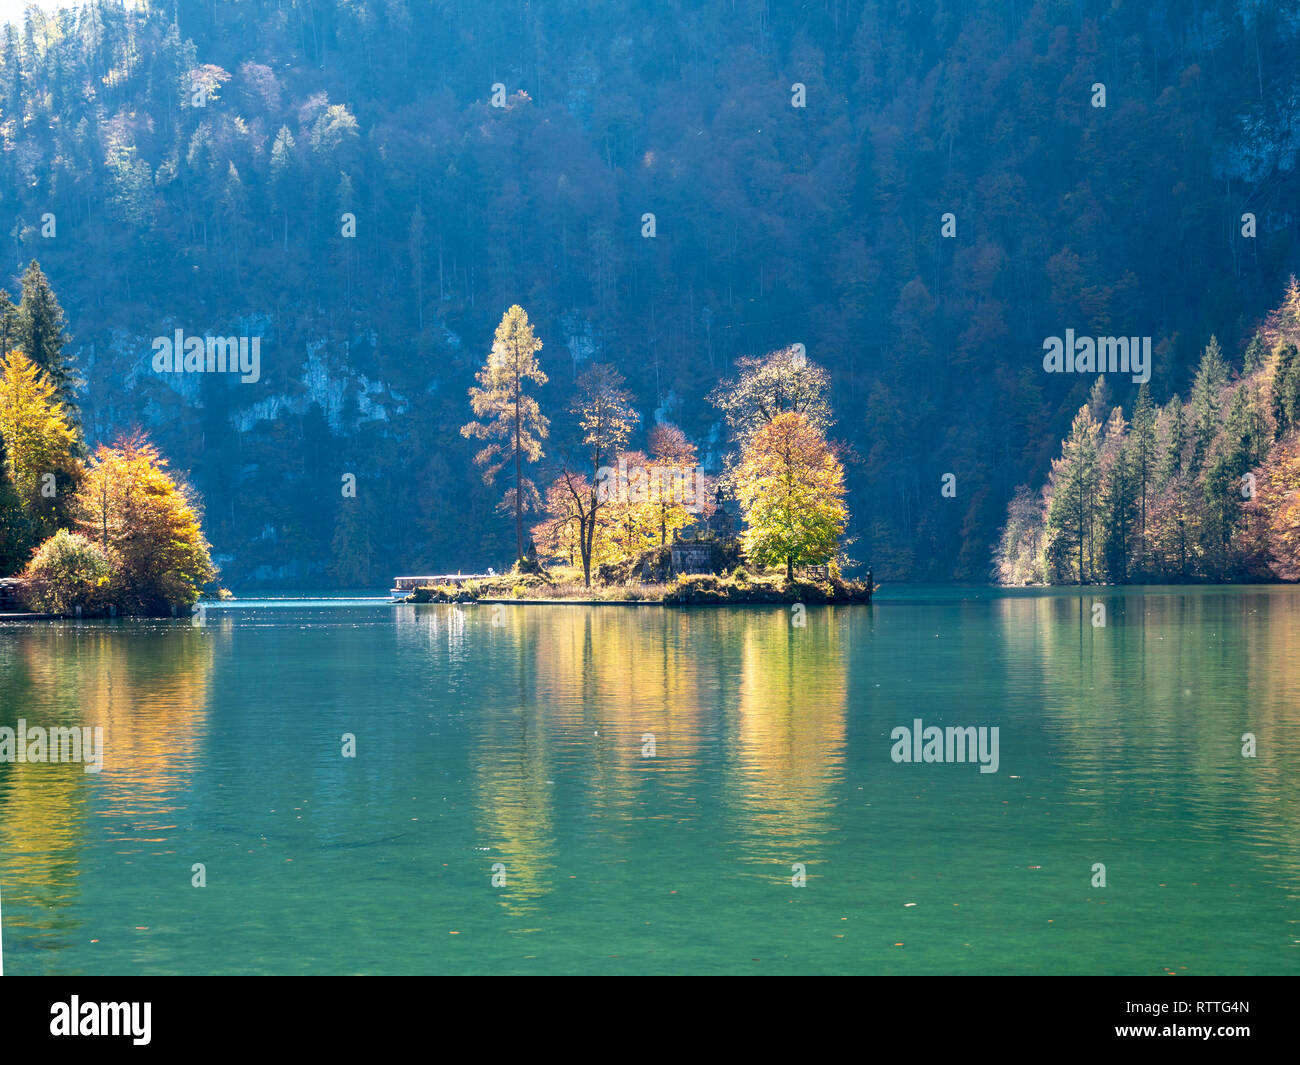 Bild der See Königssee in Berchtesgaden Deutschland im Herbst mit schönen bunten Bäumen und Insel mit Wasser Reflexionen Stockfoto